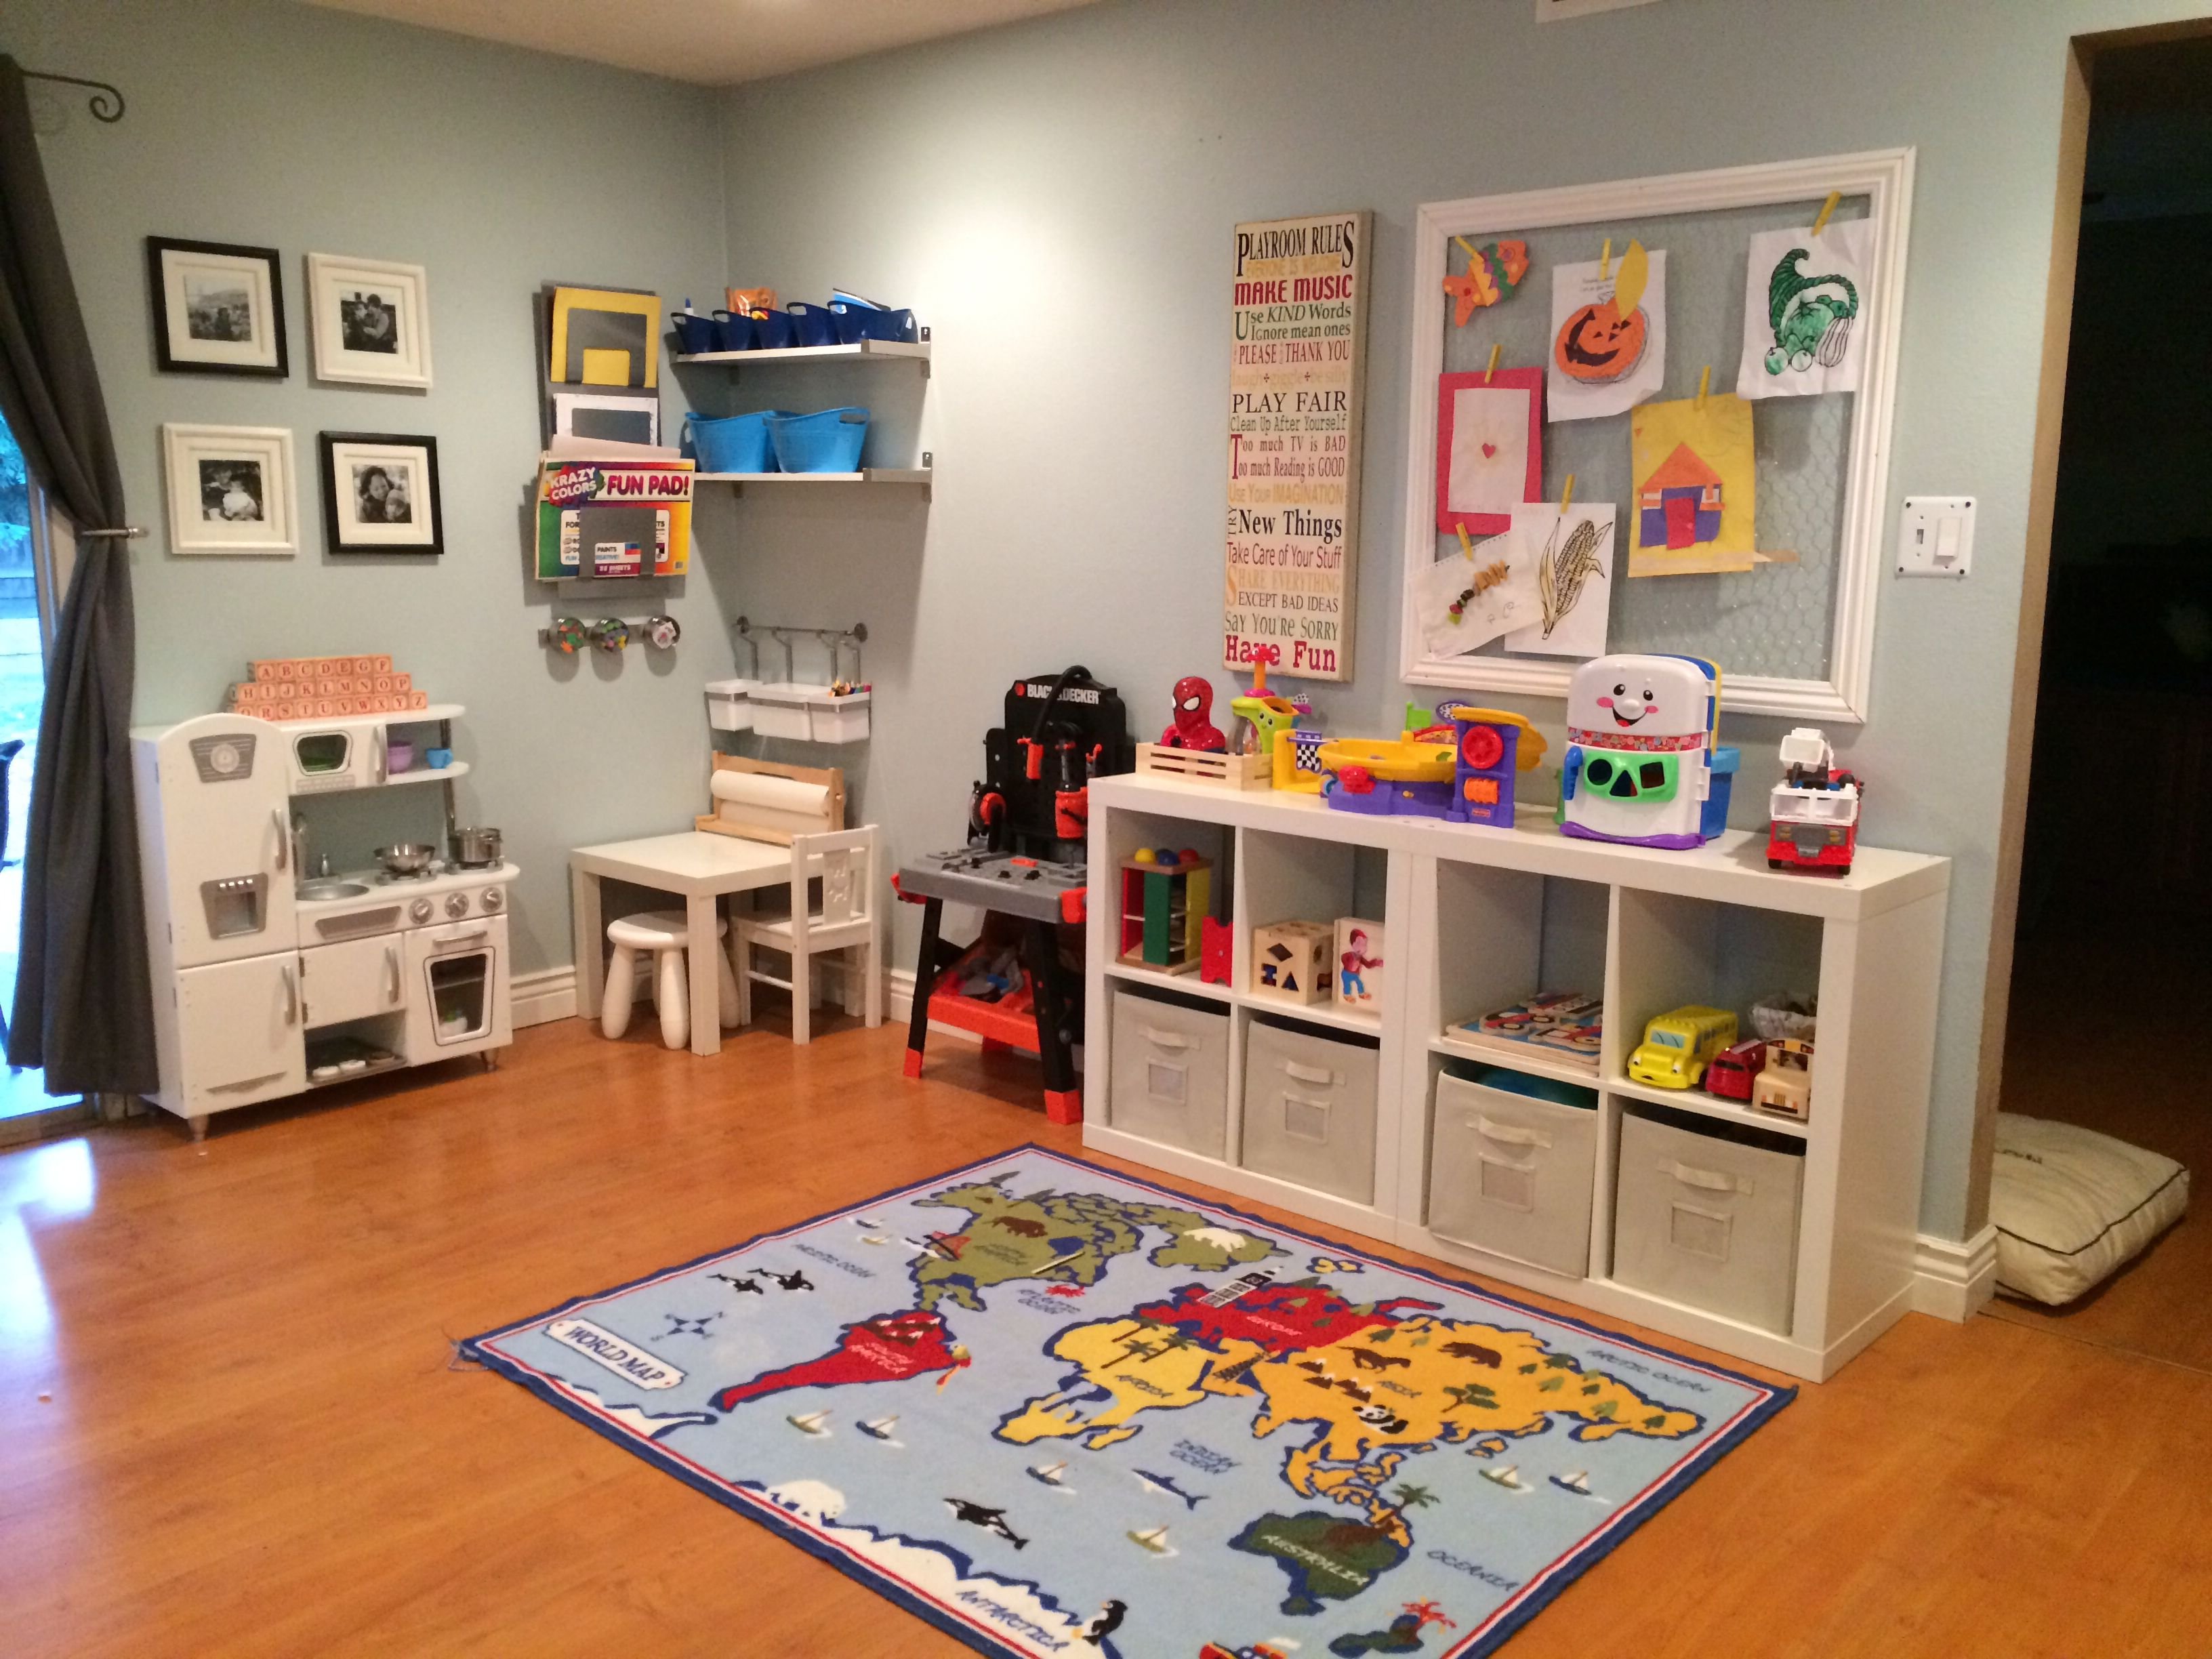 Bedroom toys. Организация пространства в детской. Игровая зона для детей в комнате. Игровое пространство для детей. Оргпнизациядетской комнаты.